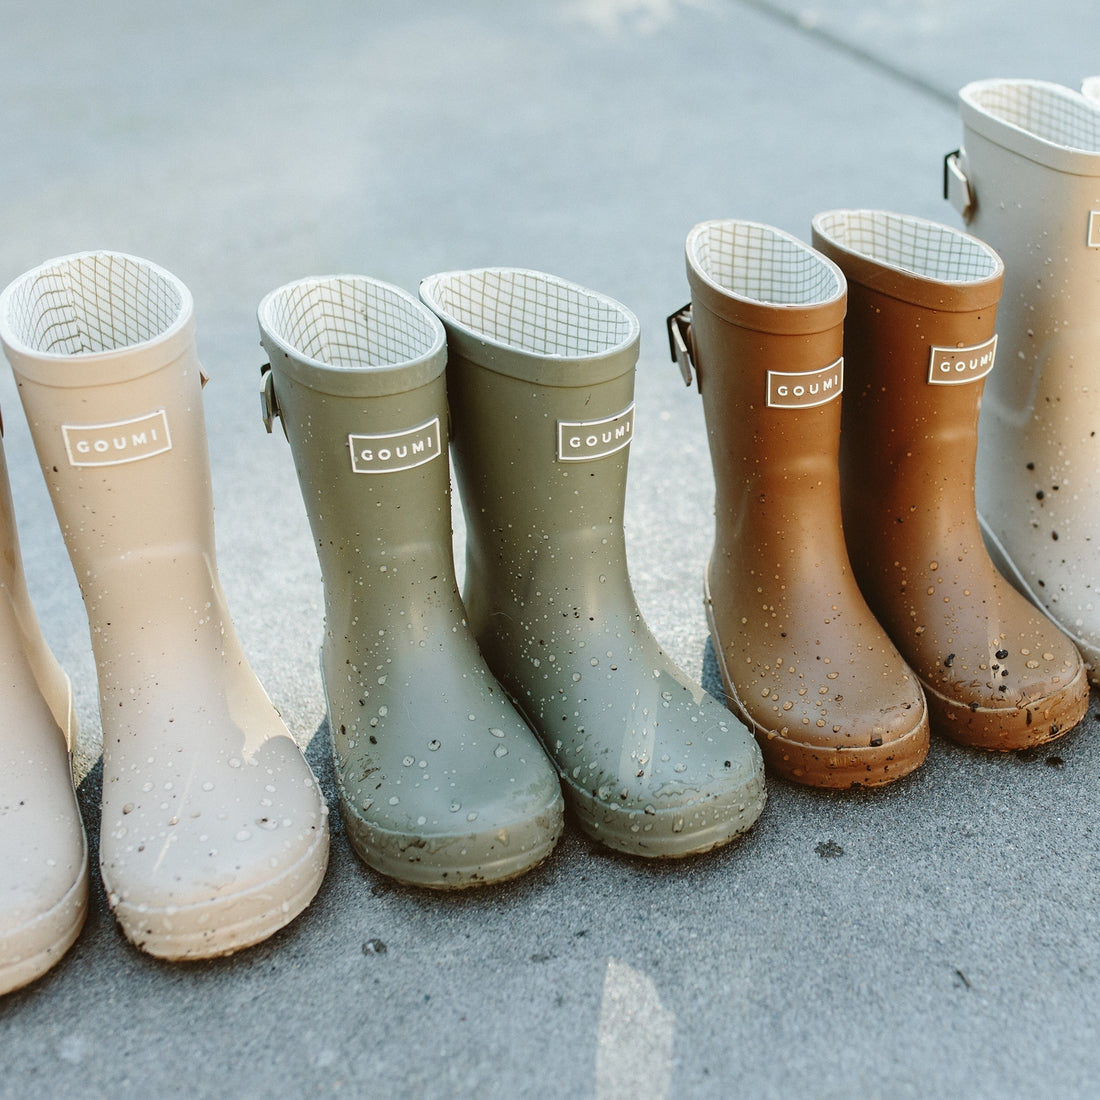 Muddies Rain Boots - Artichoke